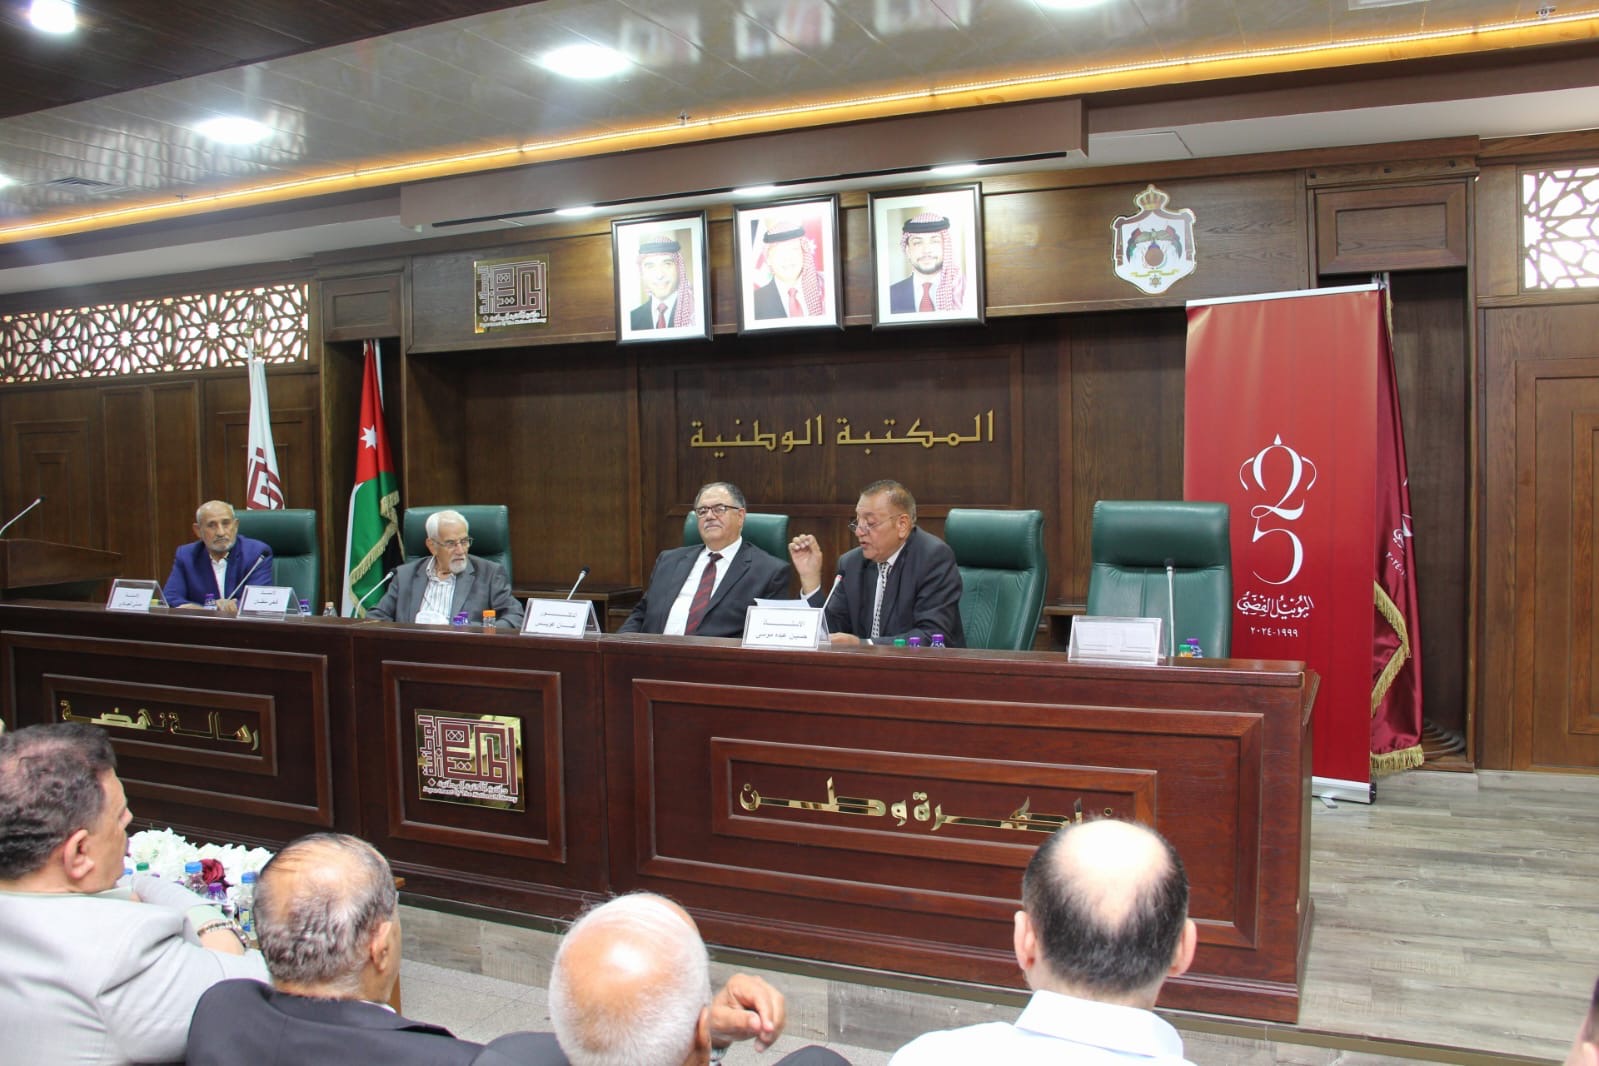 اتحاد الكتاب ينتدي حول التراث الأردني الفلسطيني المشترك ضمن فعاليات جرش الثقافية